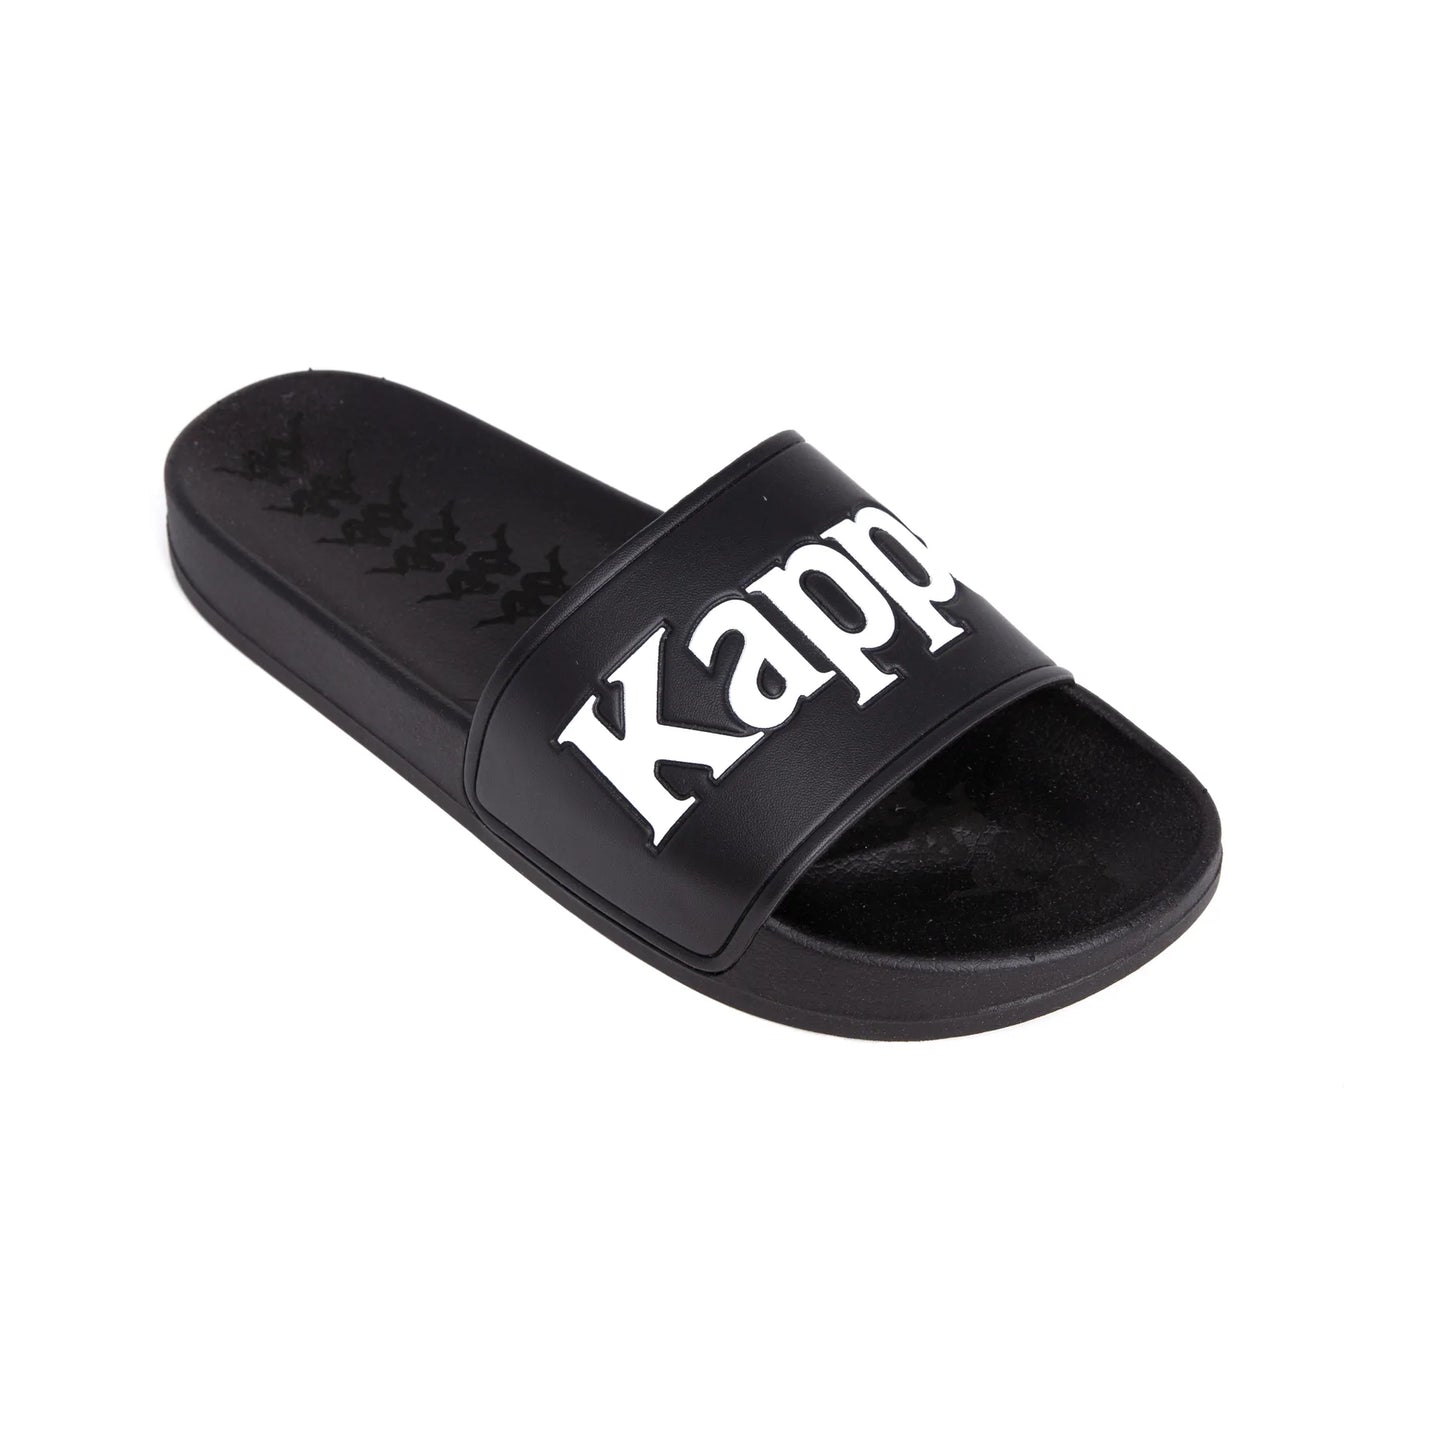 Kappa 222 Banda Adam 9 Slides - Black White